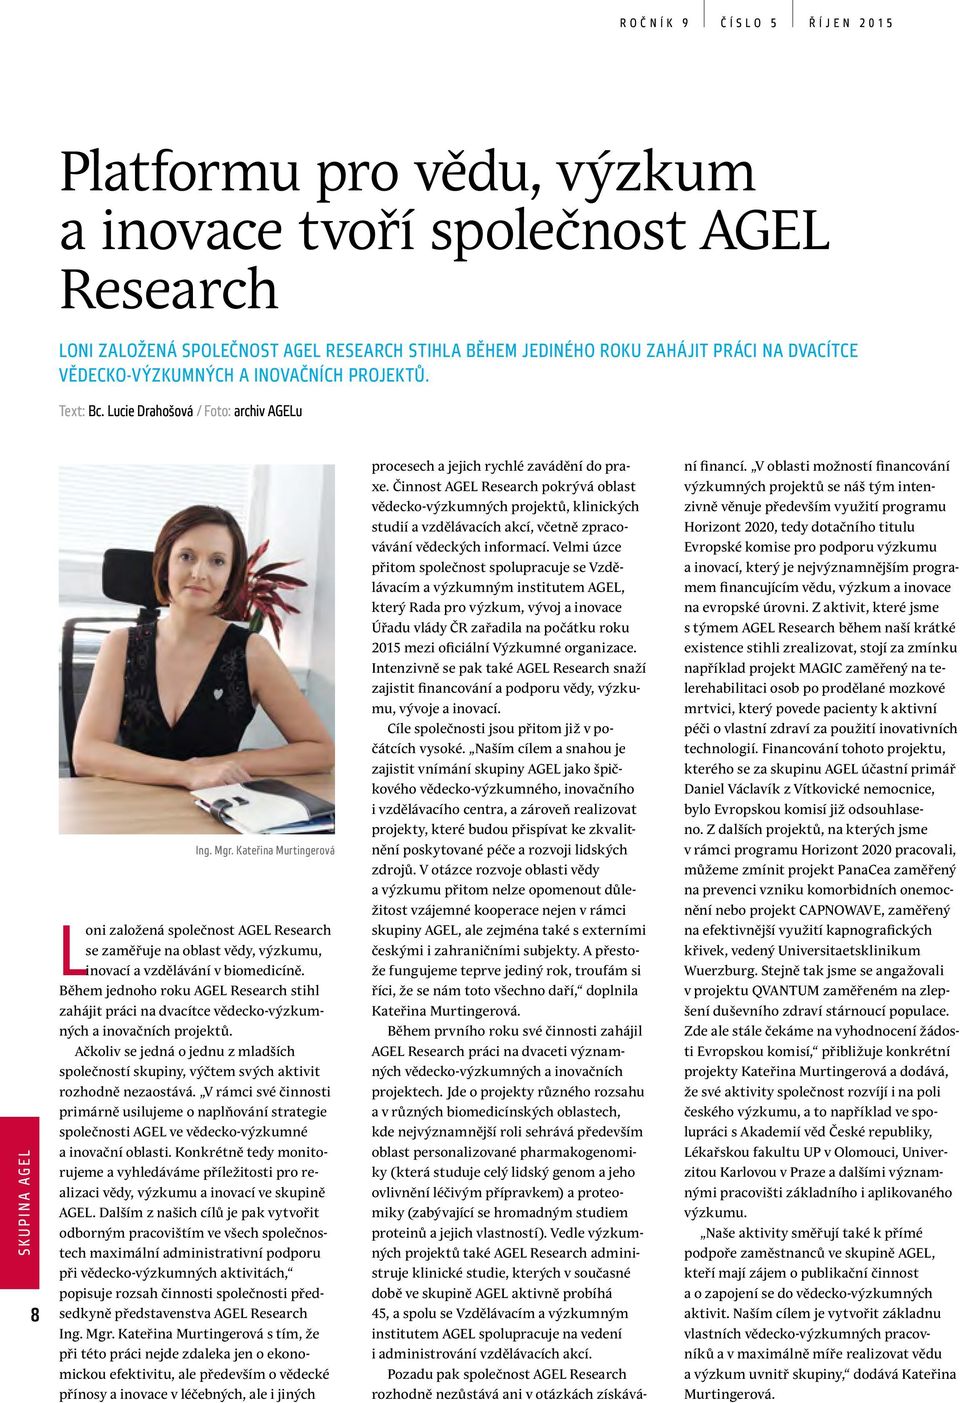 Kateřina Murtingerová Loni založená společnost AGEL Research se zaměřuje na oblast vědy, výzkumu, inovací a vzdělávání v biomedicíně.